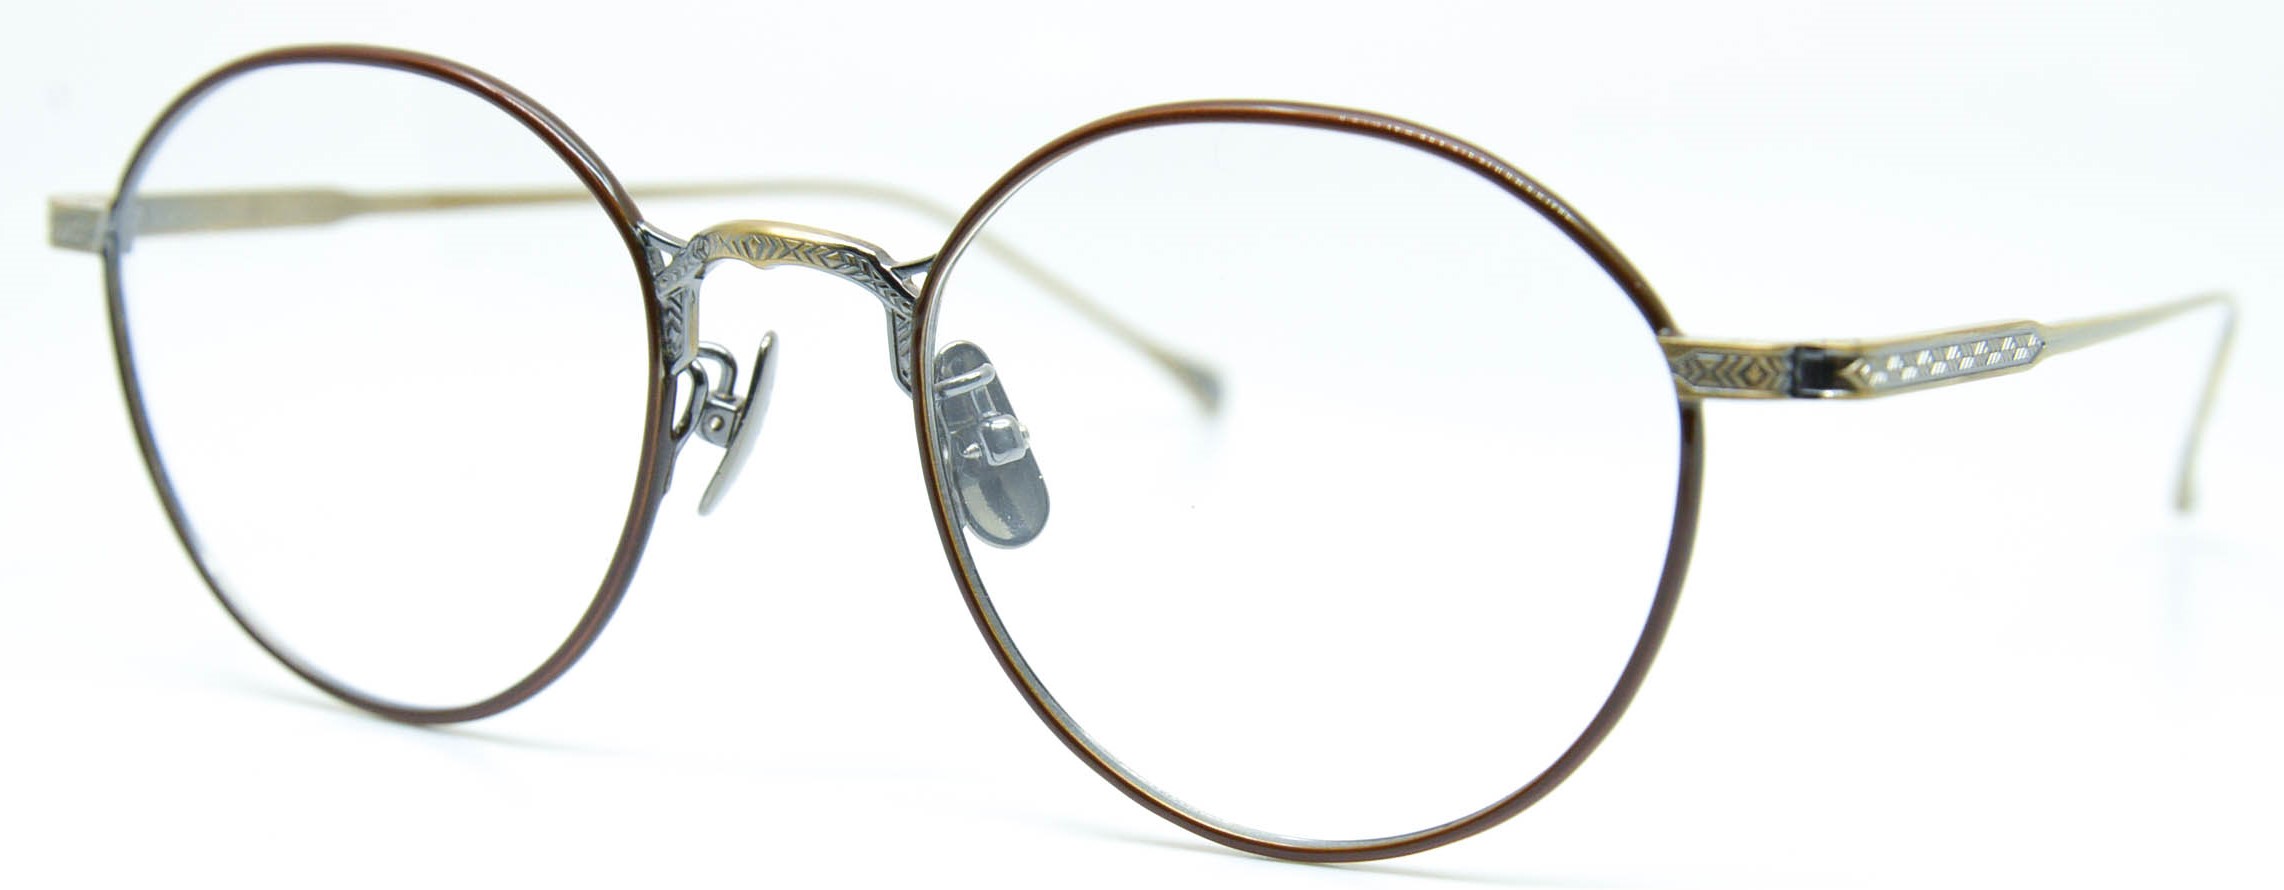 眼鏡のカラータイプC-3 Brown/At-Gold